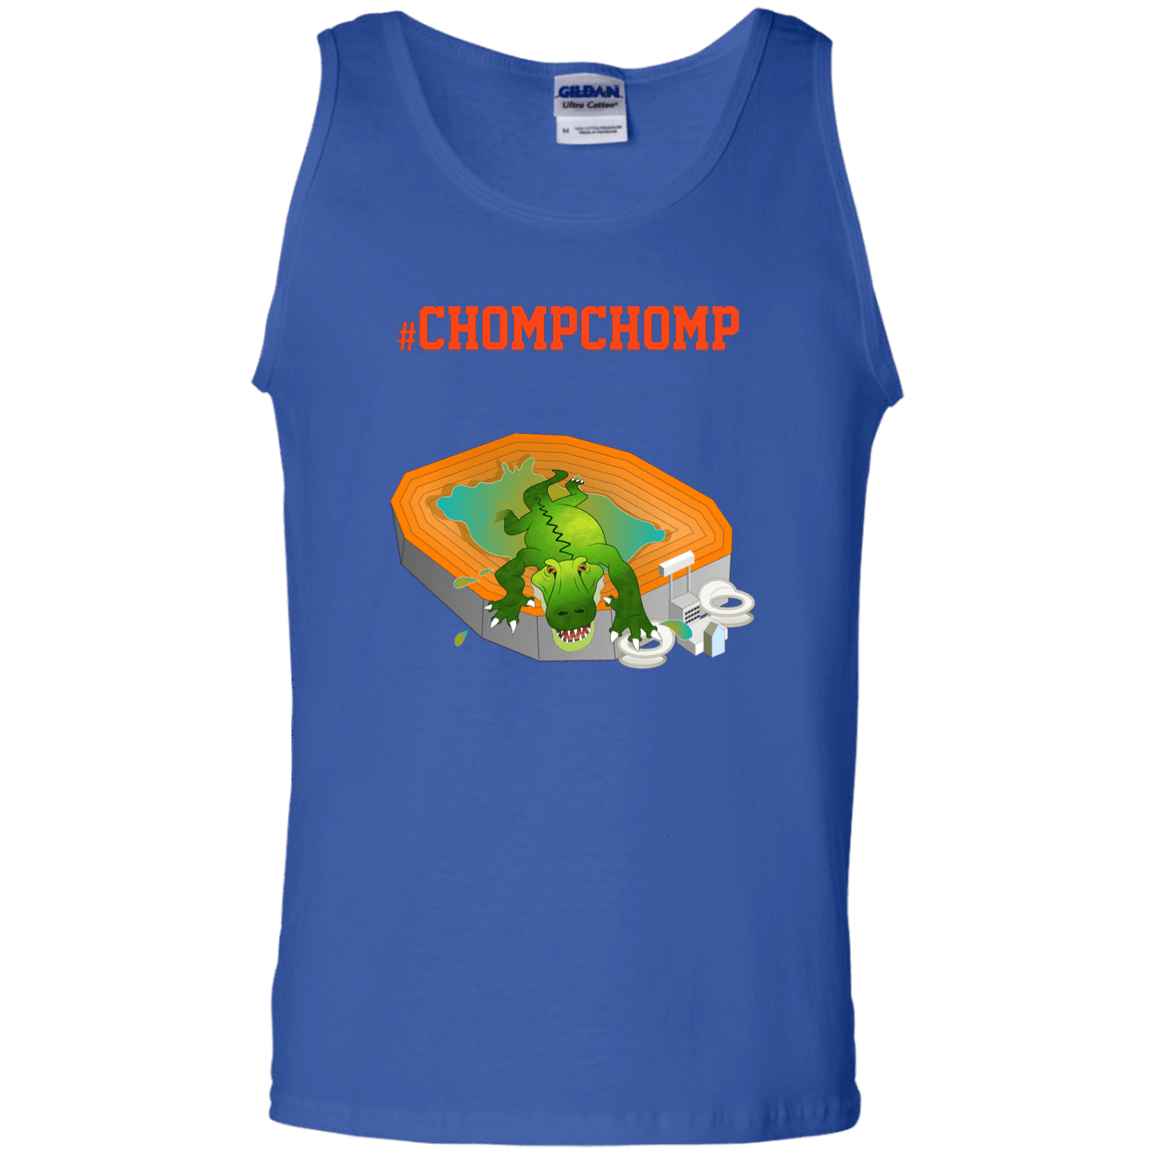 Designs by MyUtopia Shout Out:Gators Fan #ChompChomp Unisex 100% Cotton Tank Top,Royal / S,Tank Tops